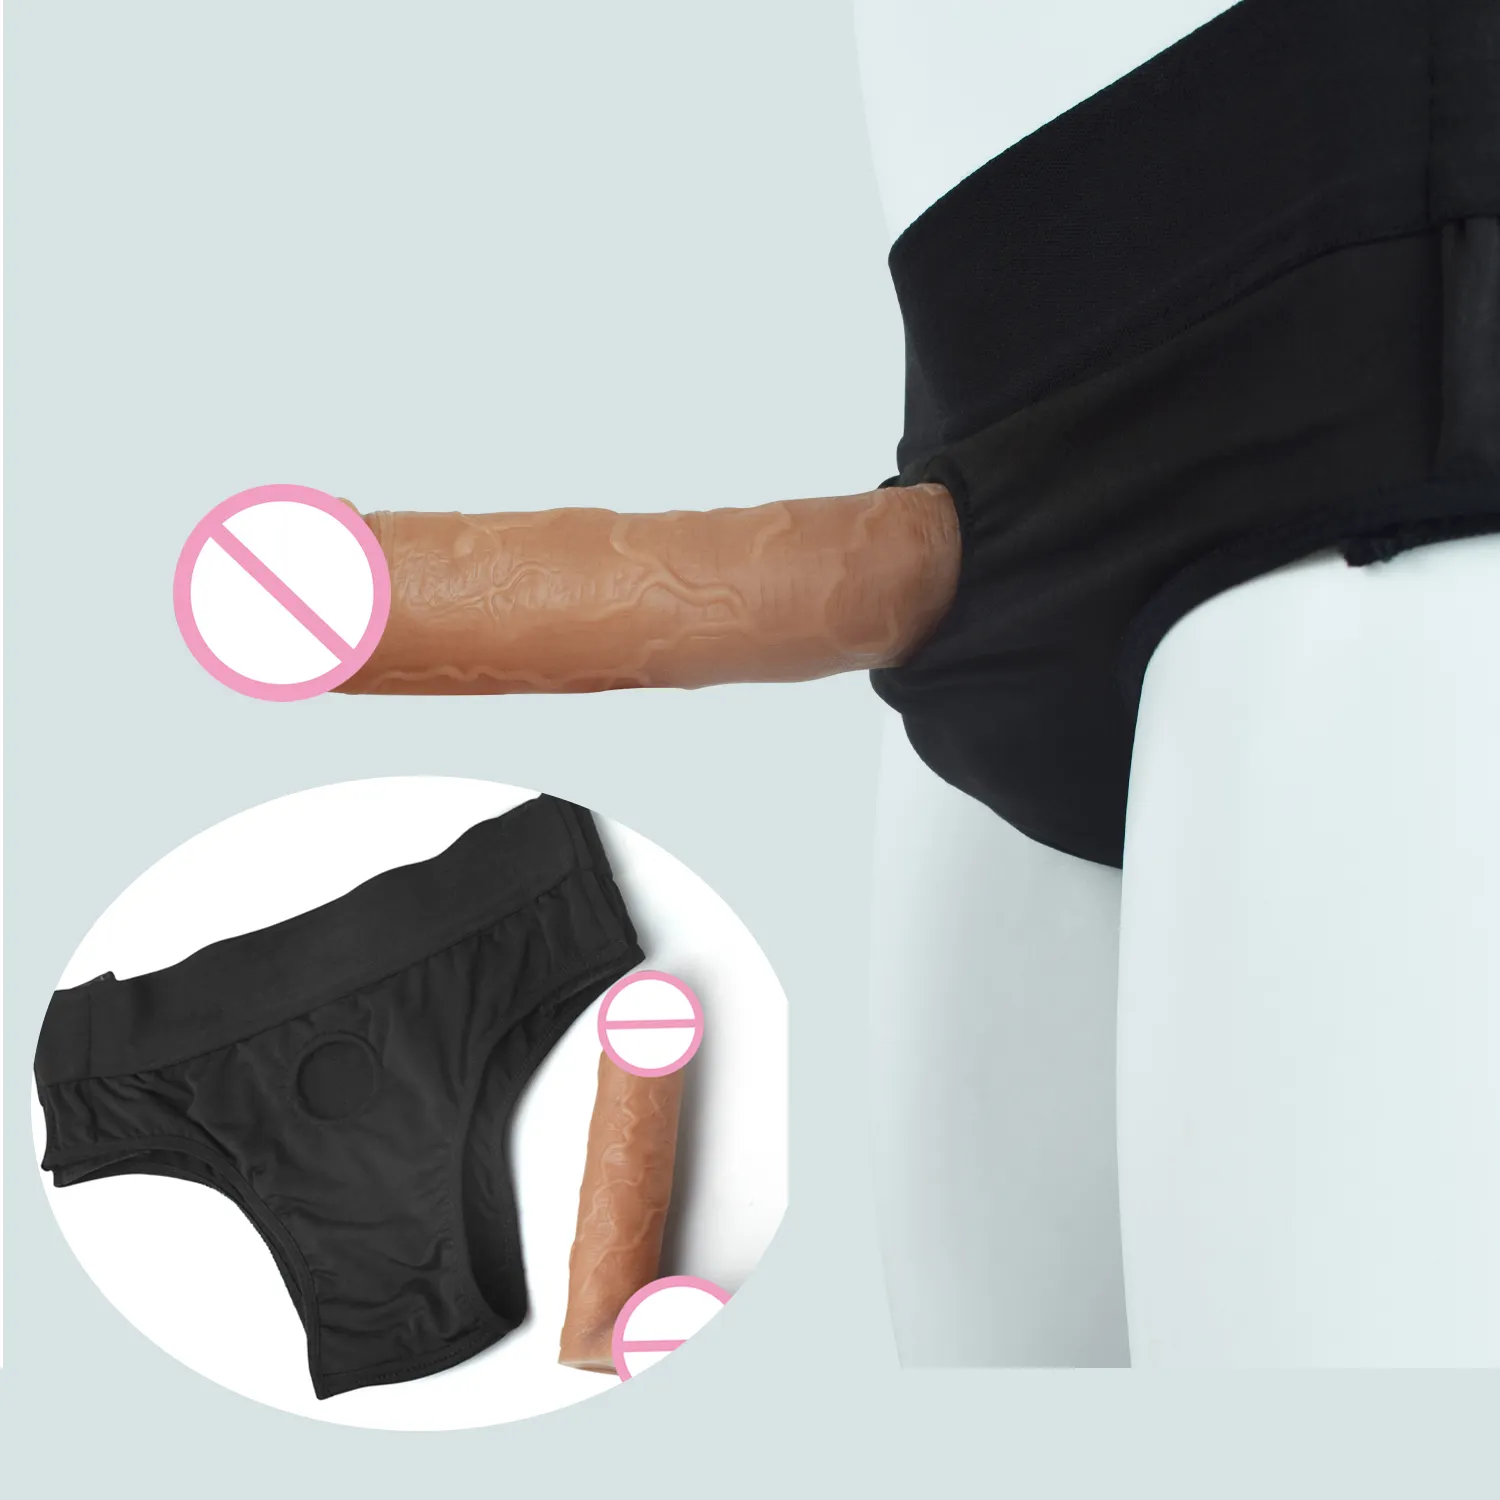 Realistico morbido Silicone Hollow aumento simulazione pene morbido maniche del pene con cintura Strap-On giocattoli del sesso per uomo donna